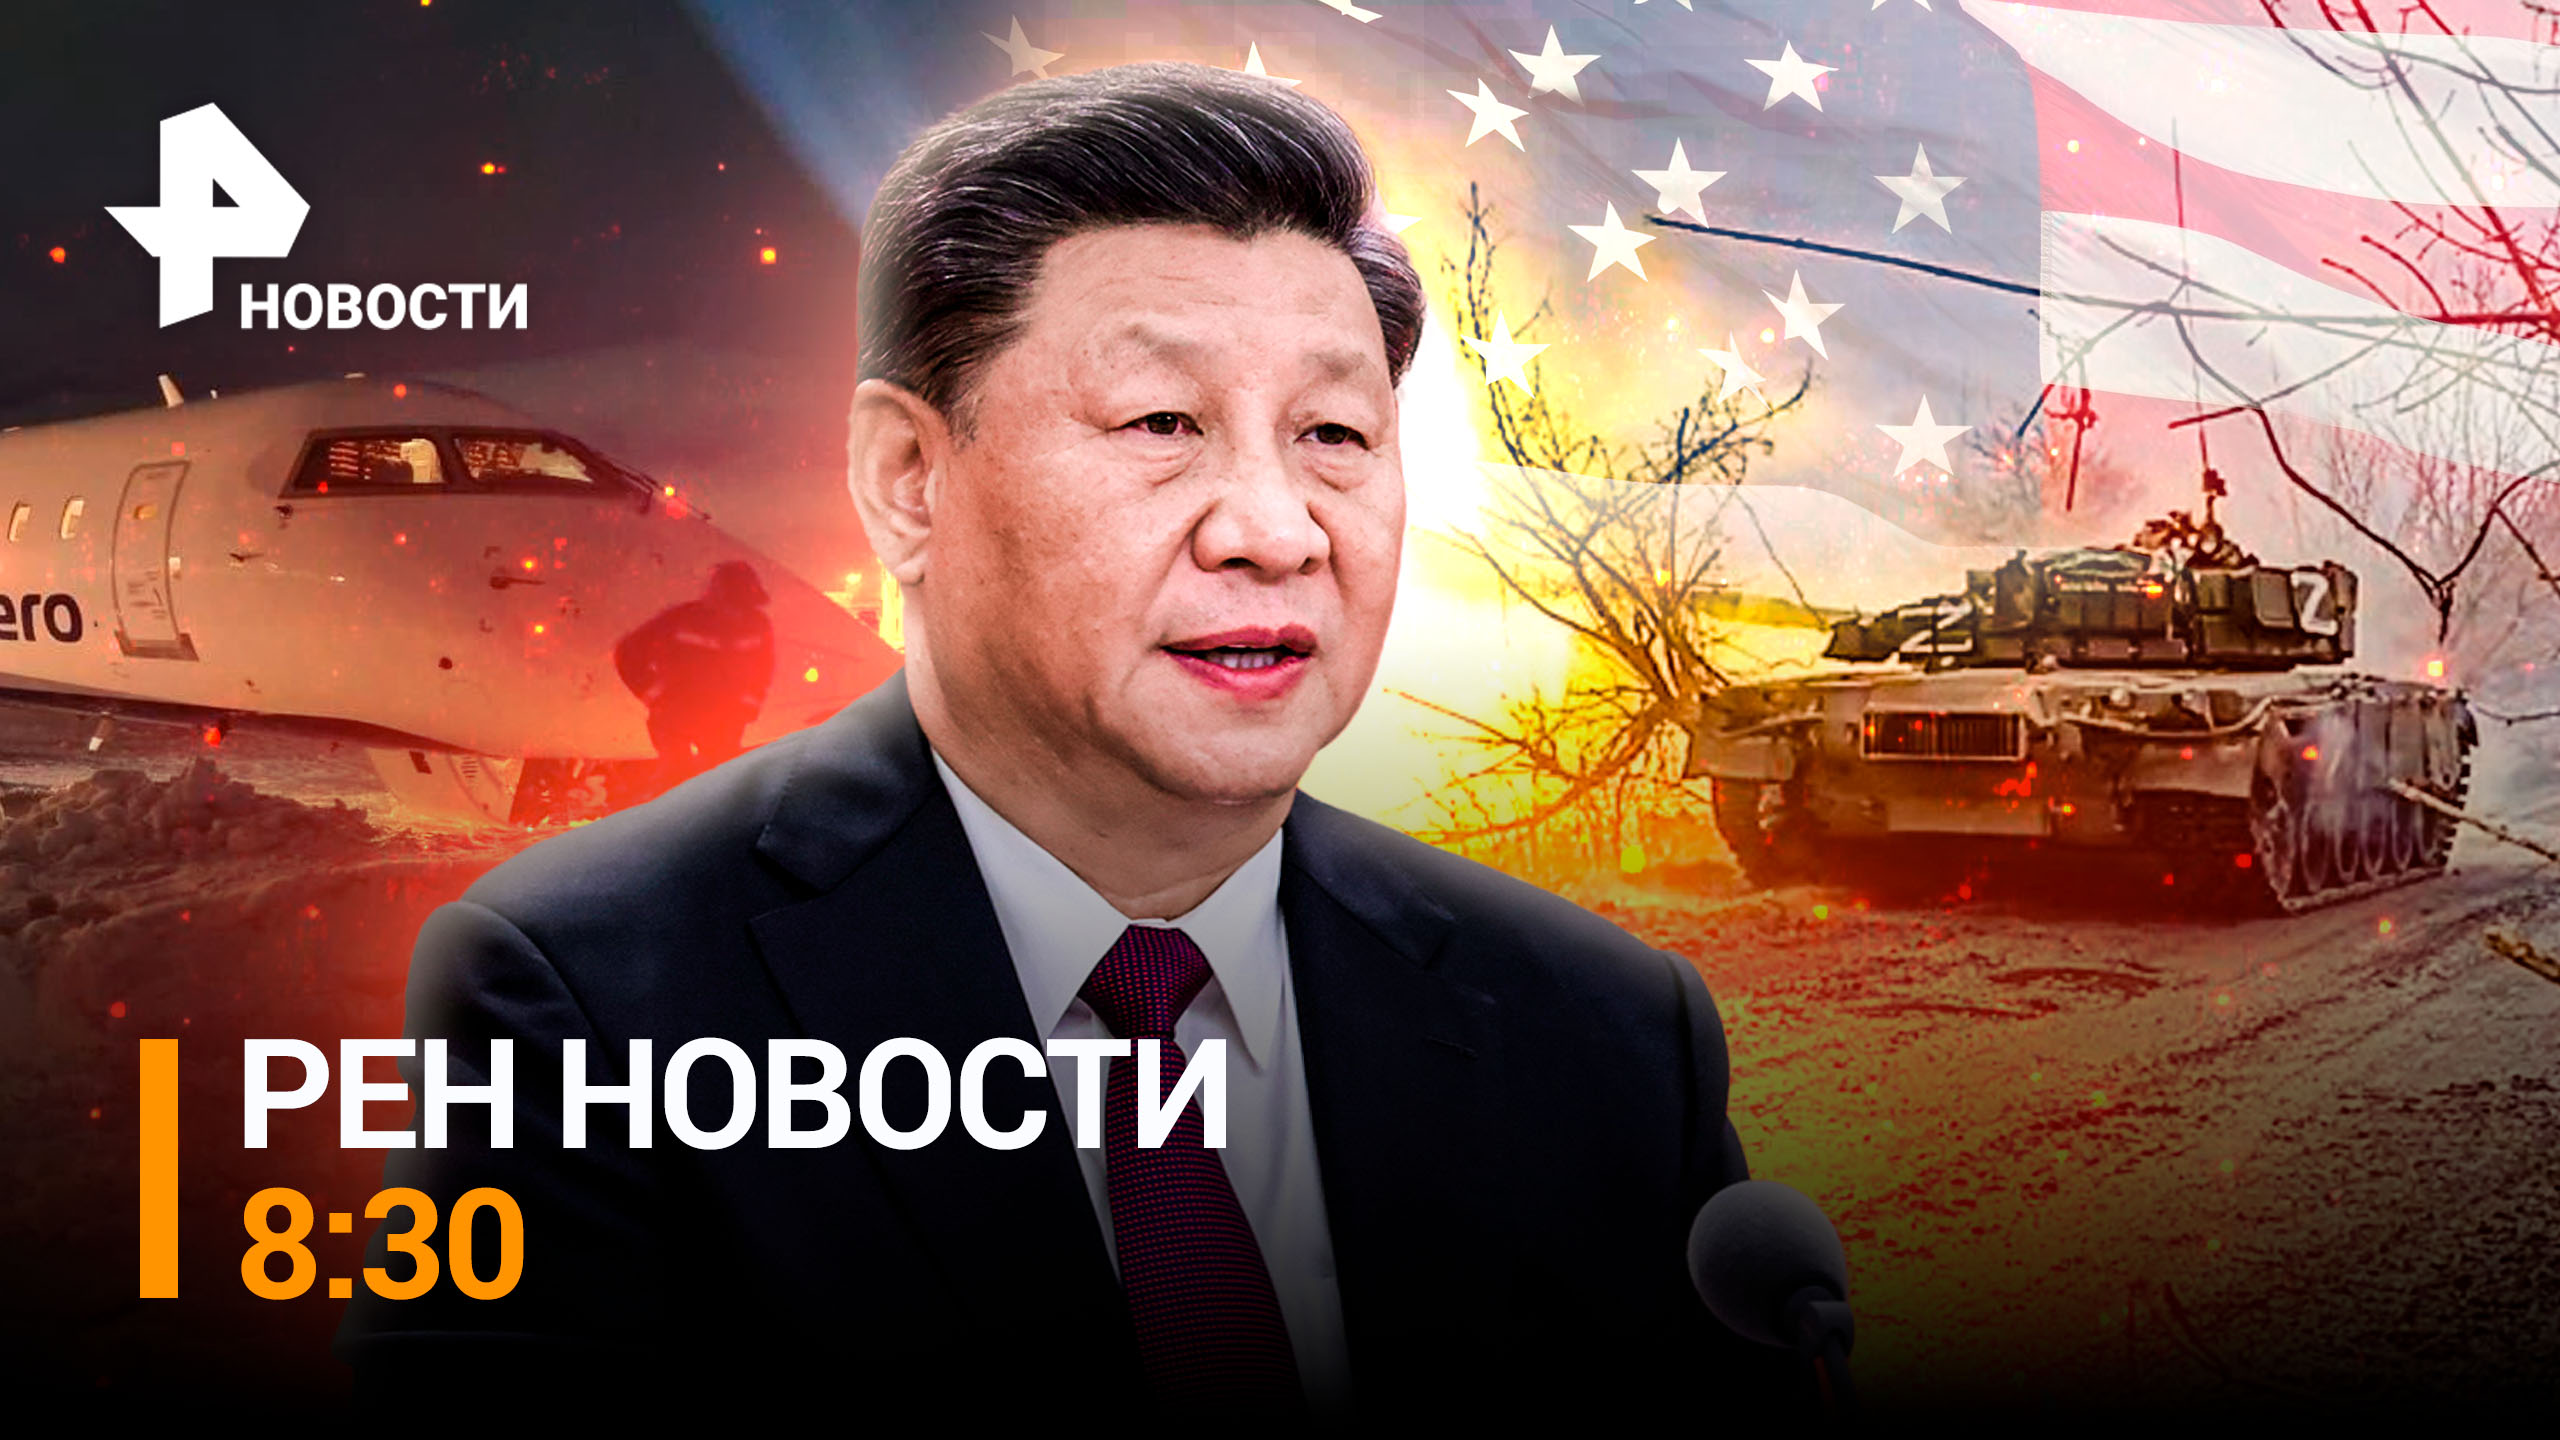 Китайские предупреждения закончились: жесткий ответ КНР на действия США / РЕН Новости 8:30, 07.03